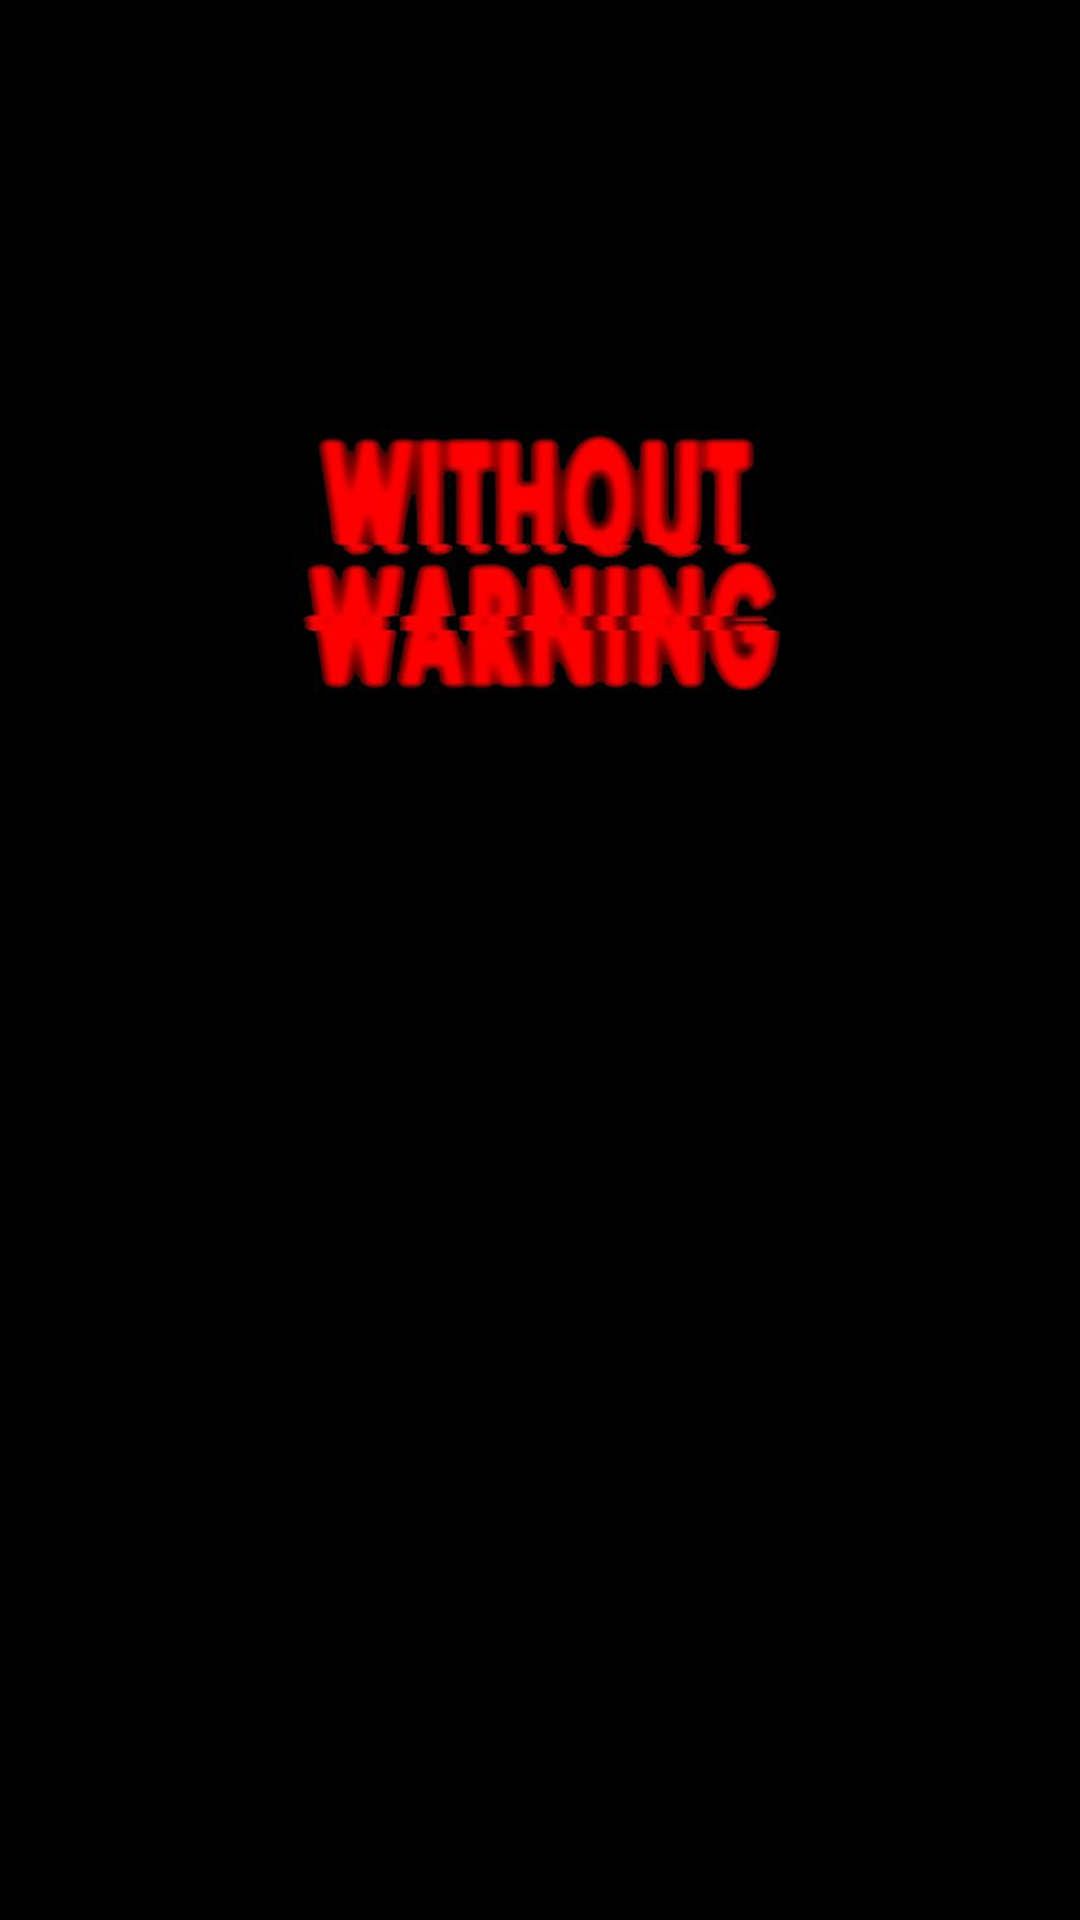 Warning Wallpaper Free Warning Background